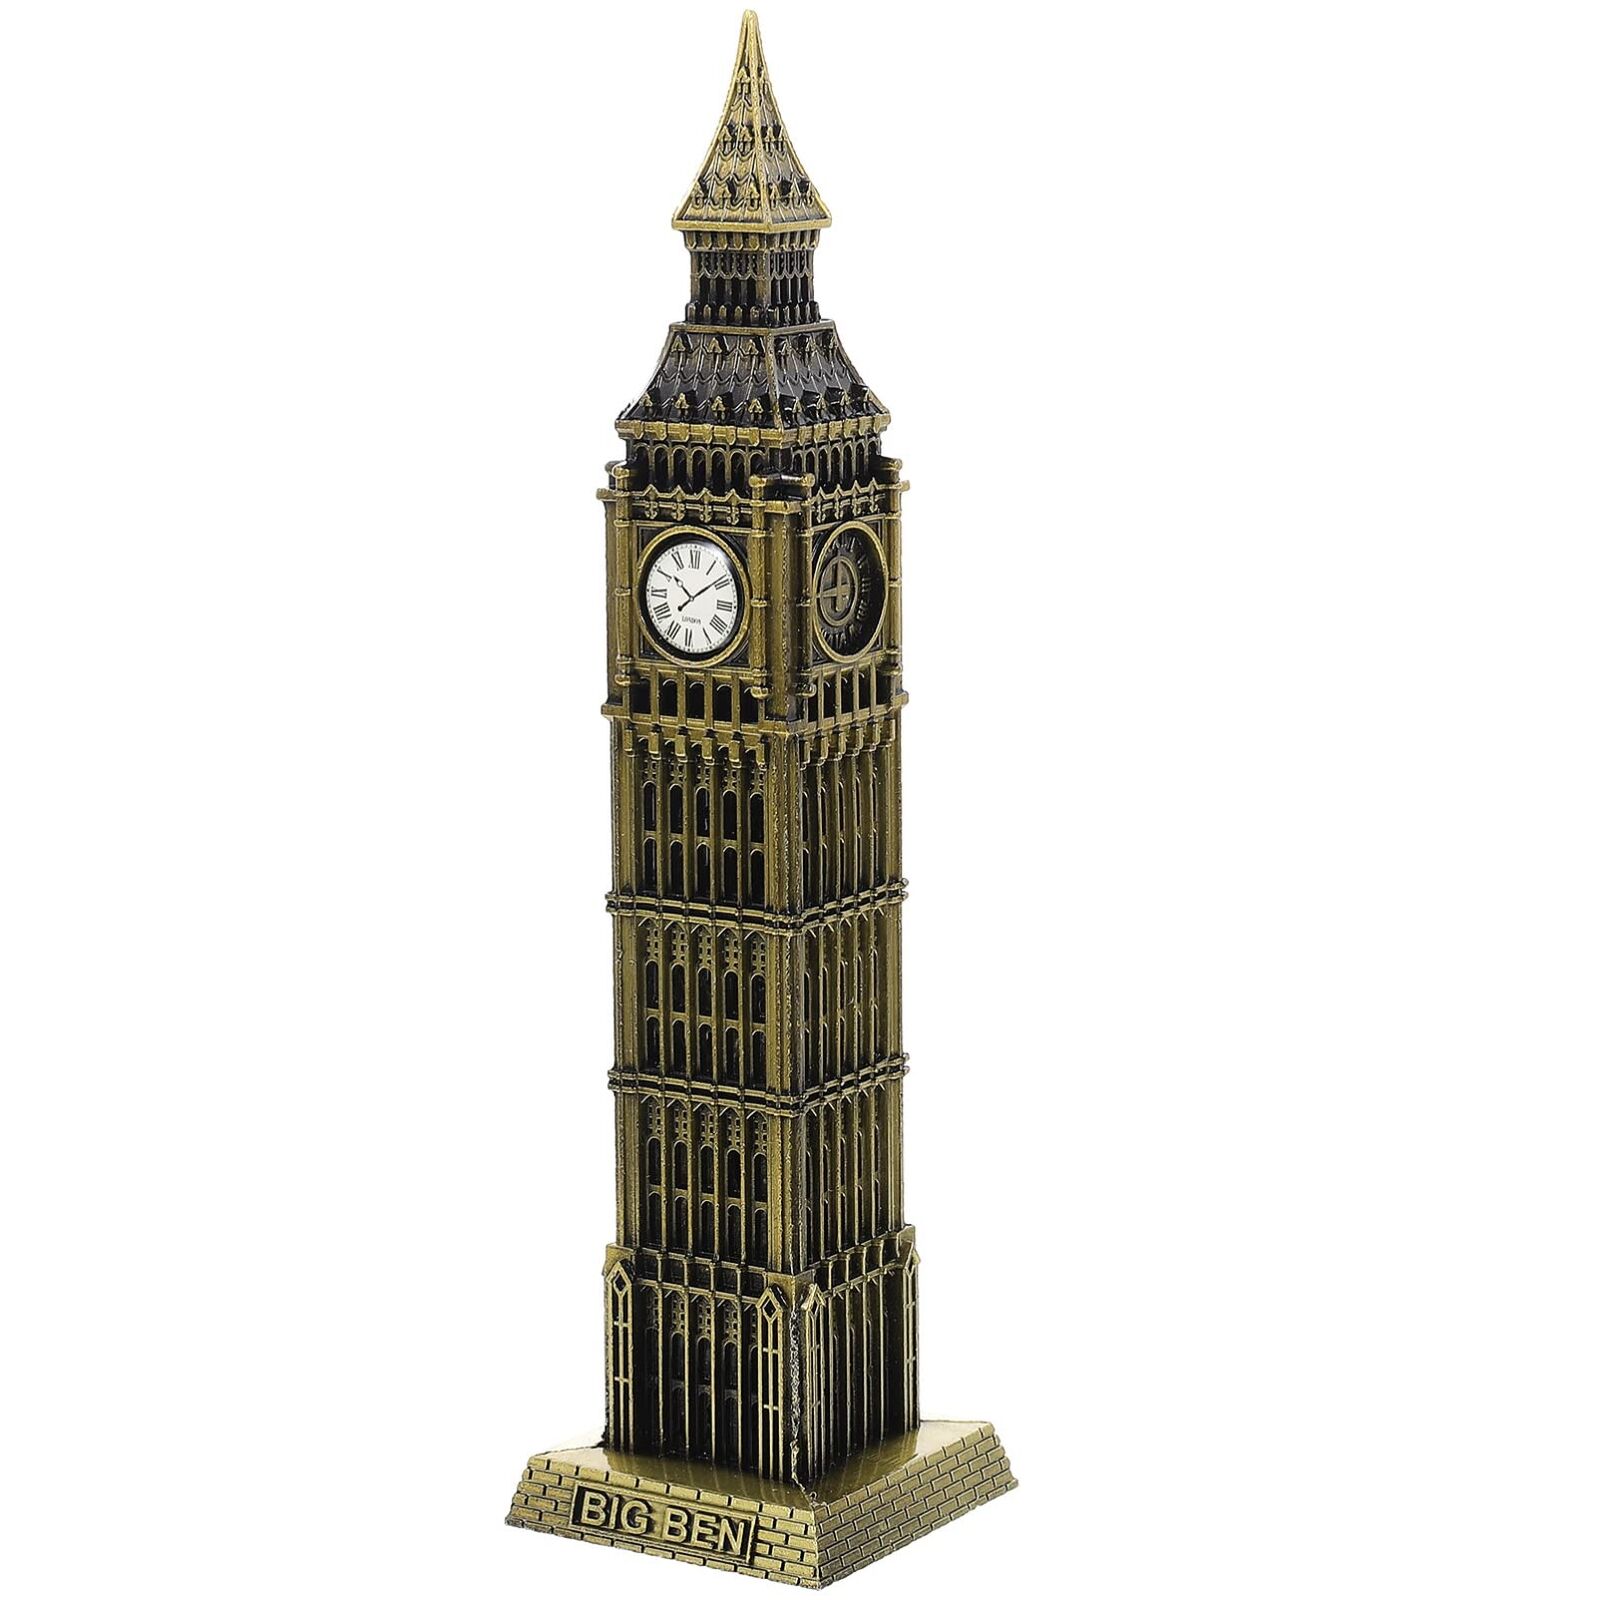 IMIKEYA Big Ben Statue：Decorative Metal Big Ben Building Model Figurine T